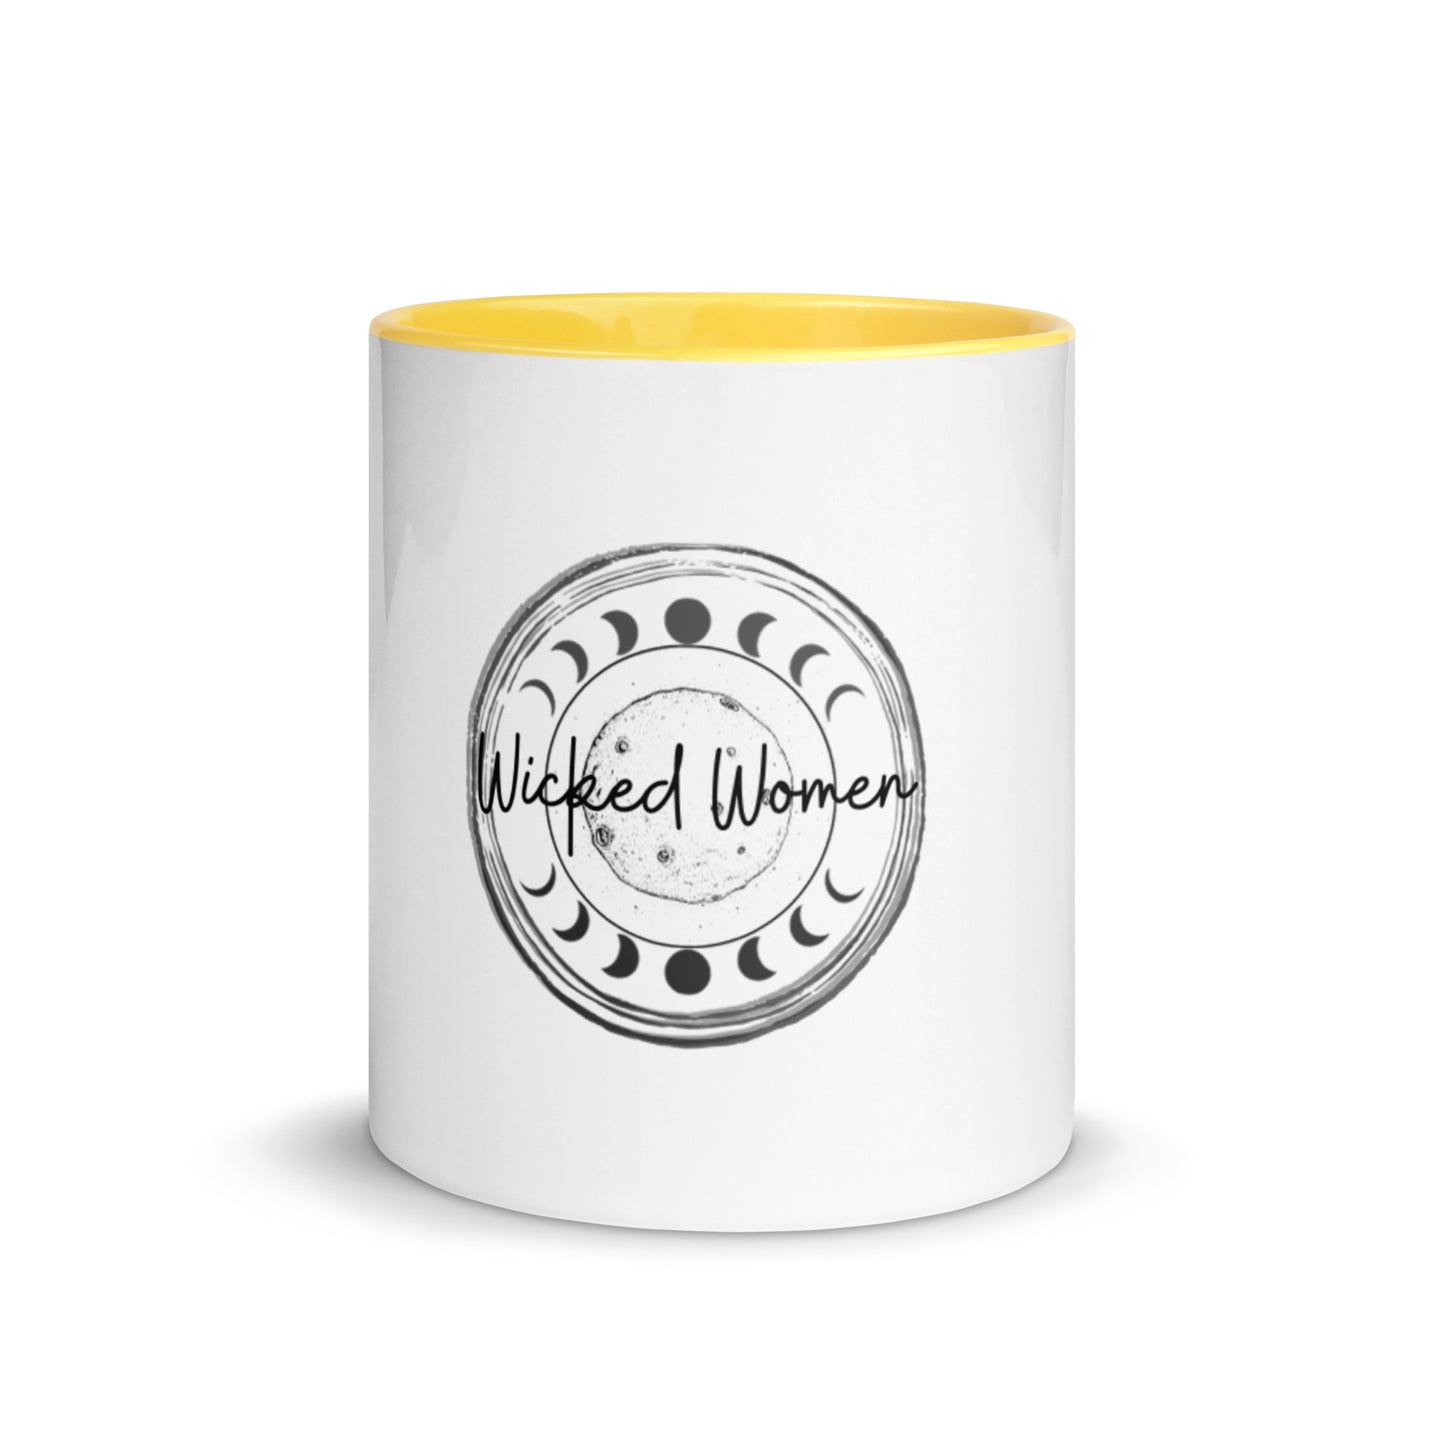 Krus med WickedWomen-logo og farge inni